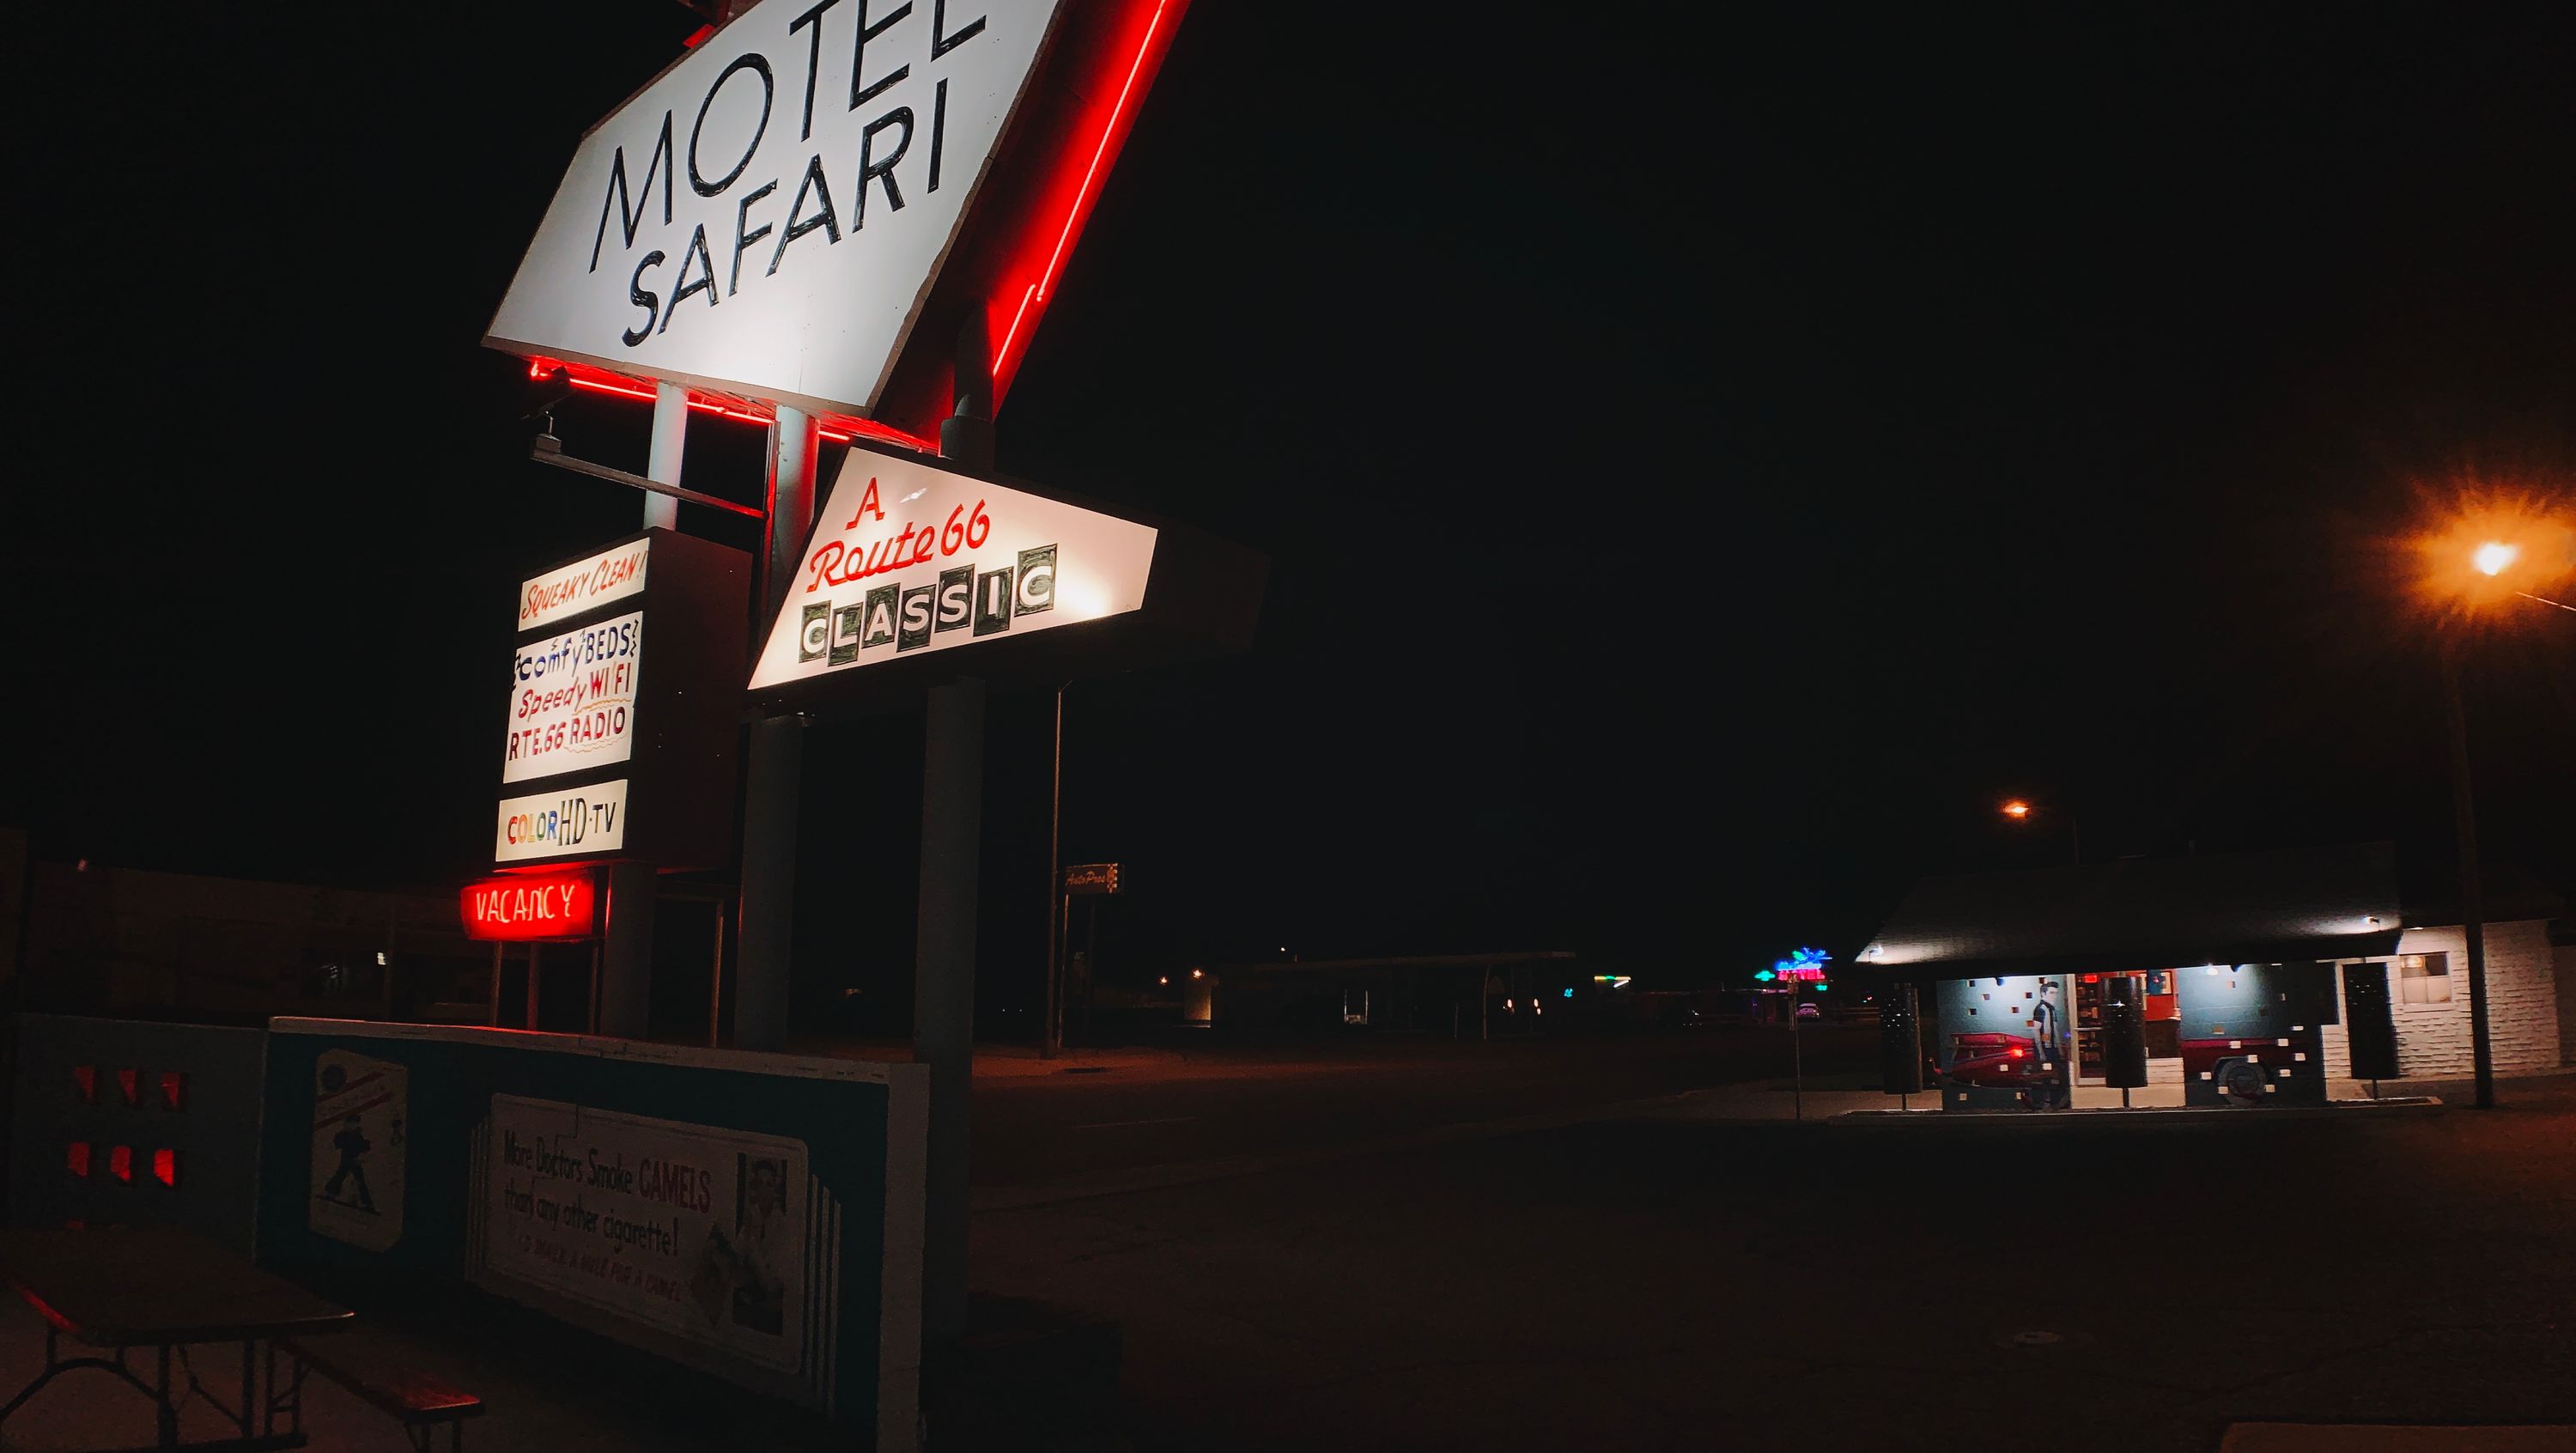 Motel Safari in Tucumcari, NM